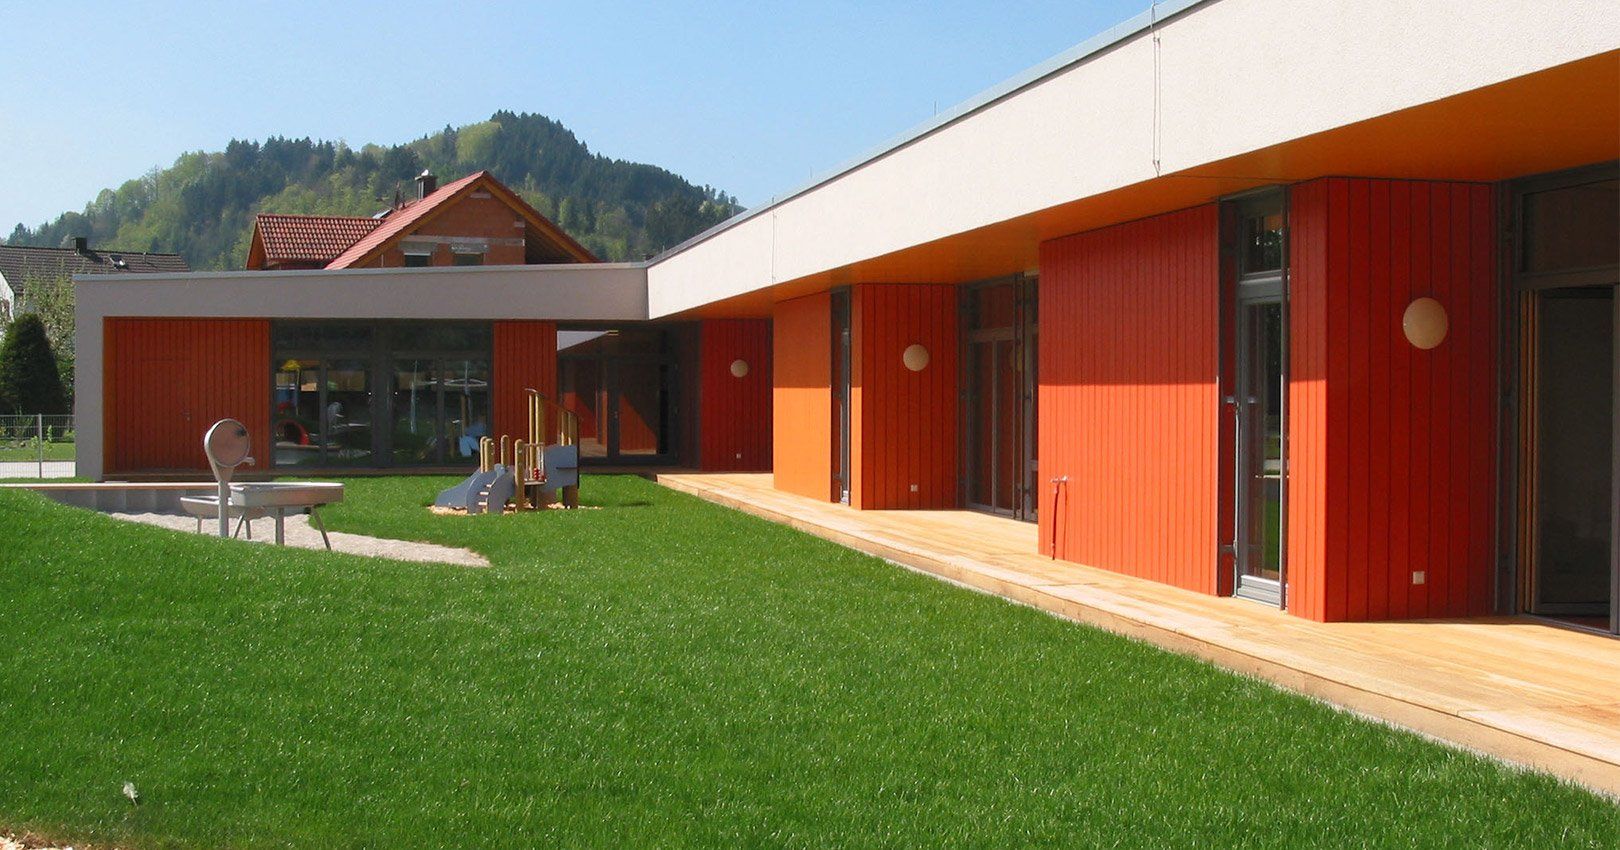 Kindertagesstätte in Biberach, Objekt-Referenz